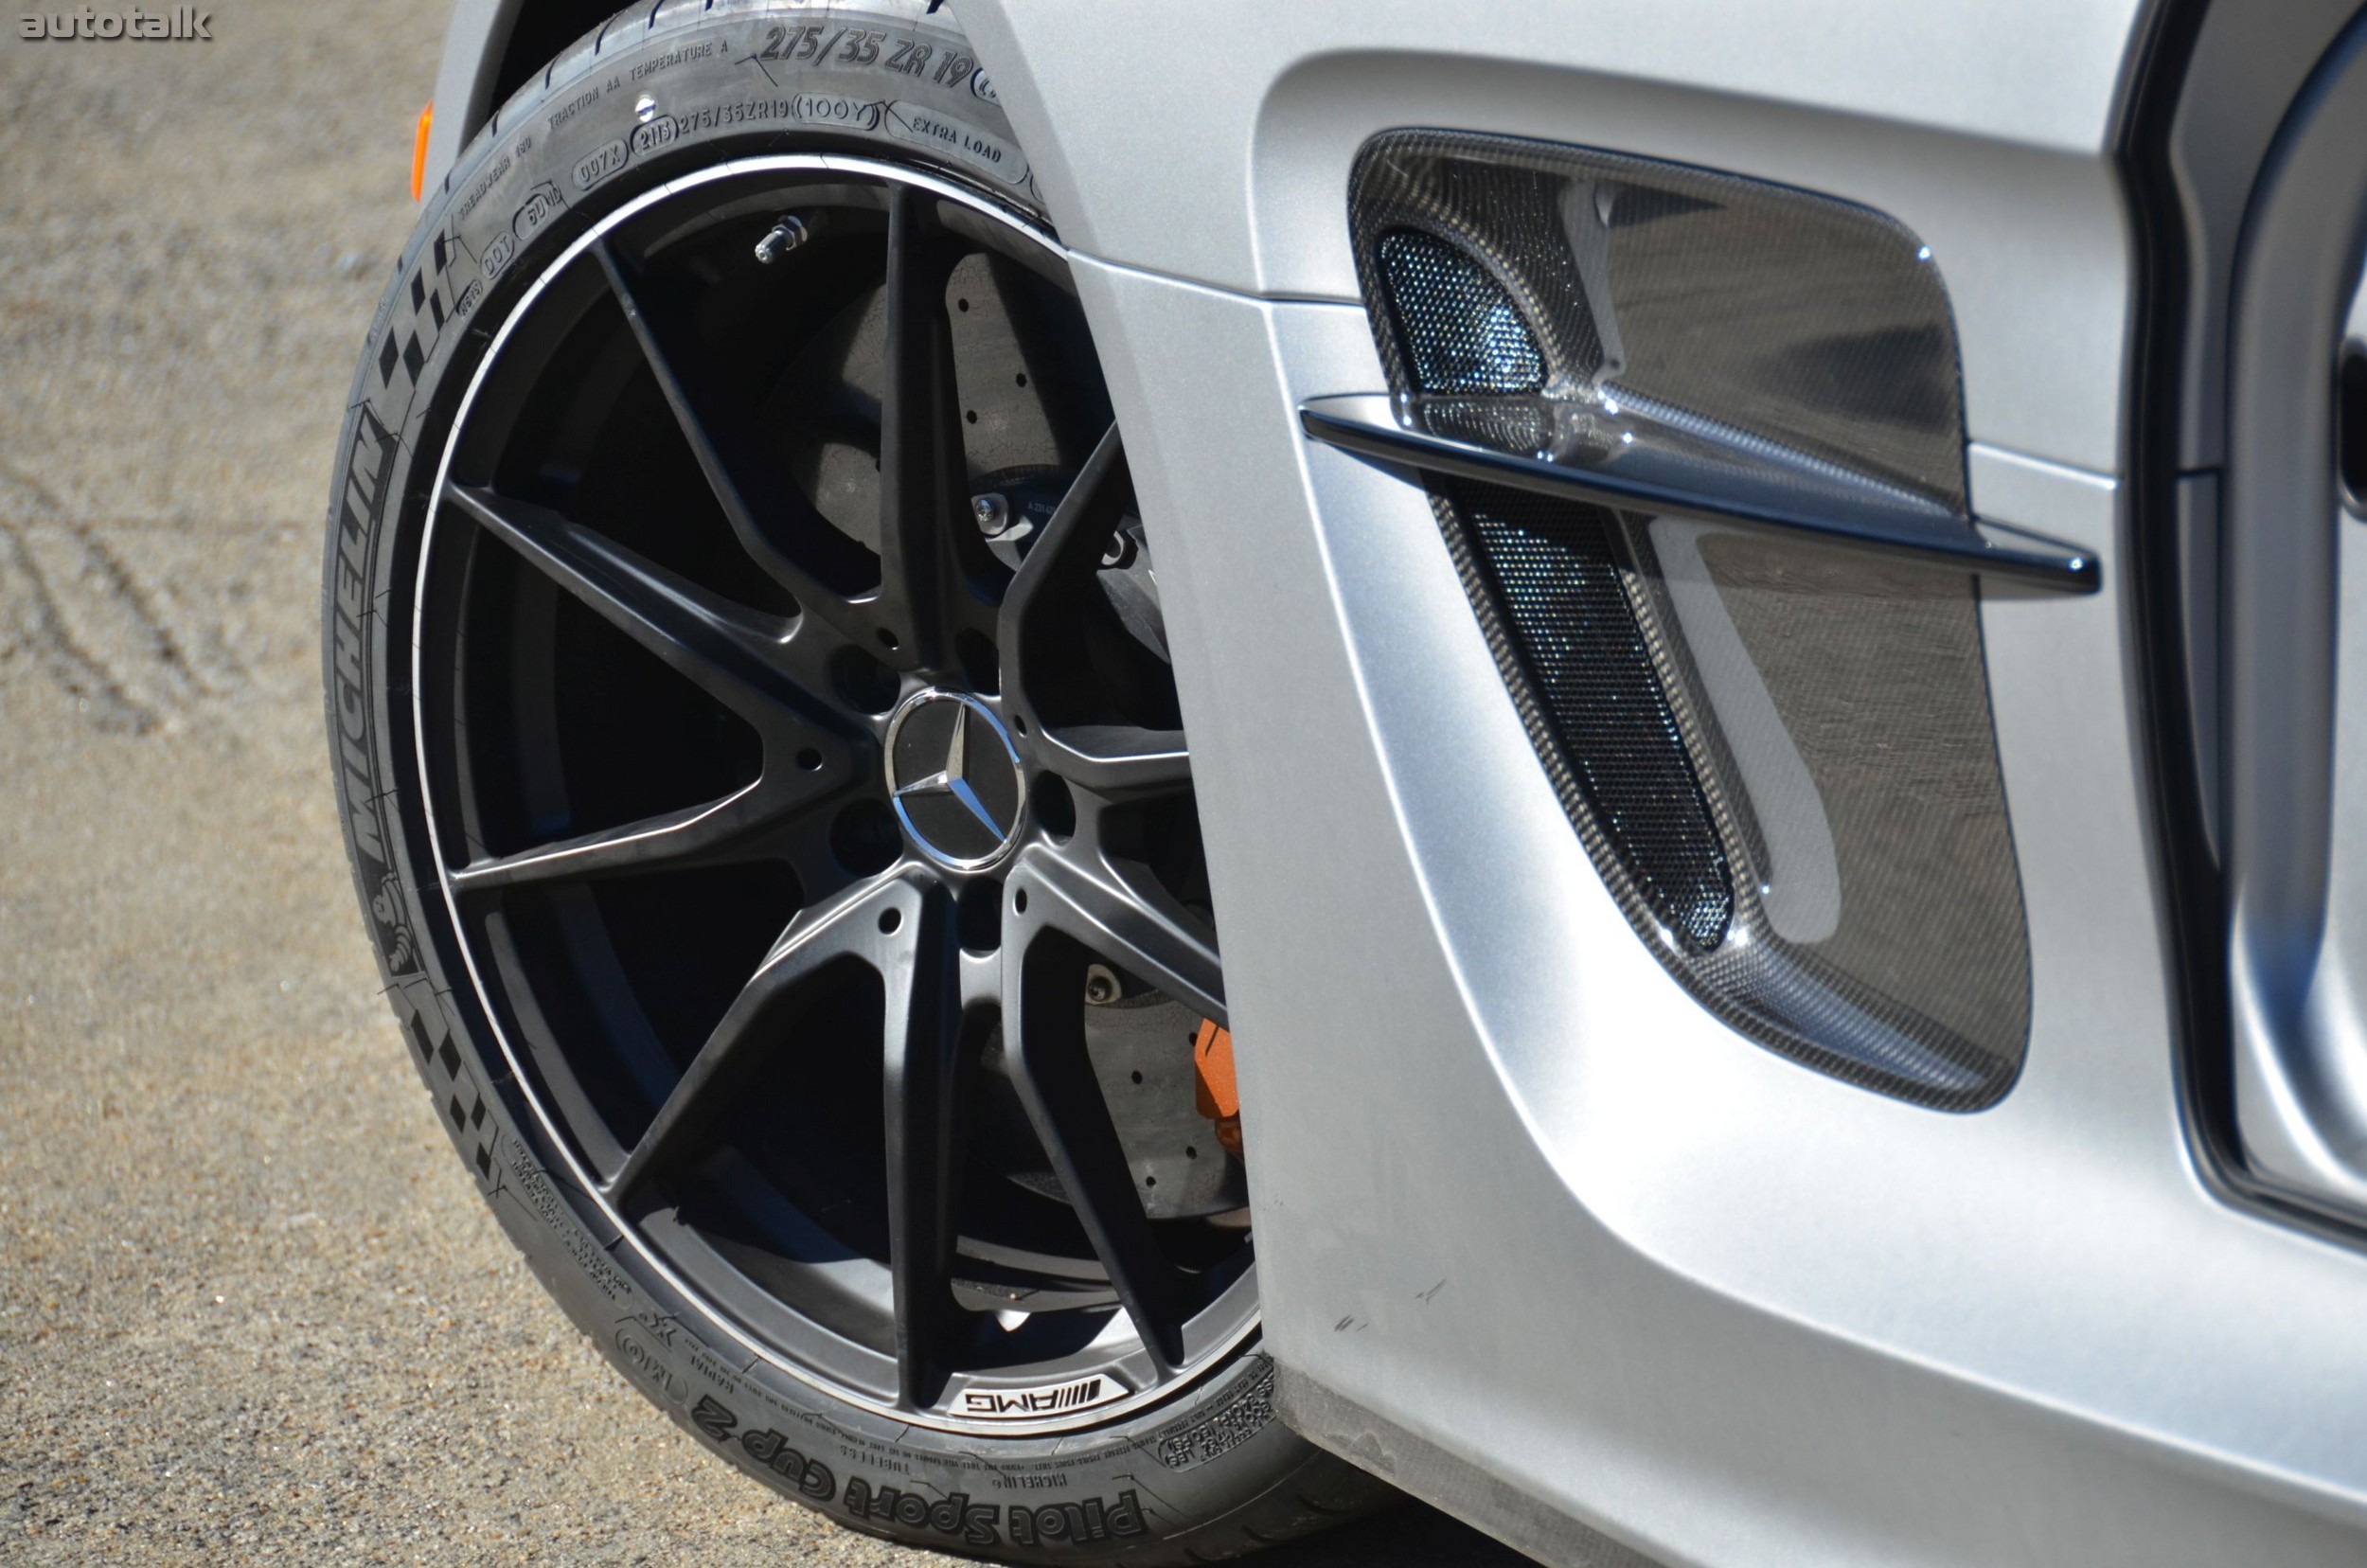 2014 Mercedes-Benz SLS AMG Black Series Review